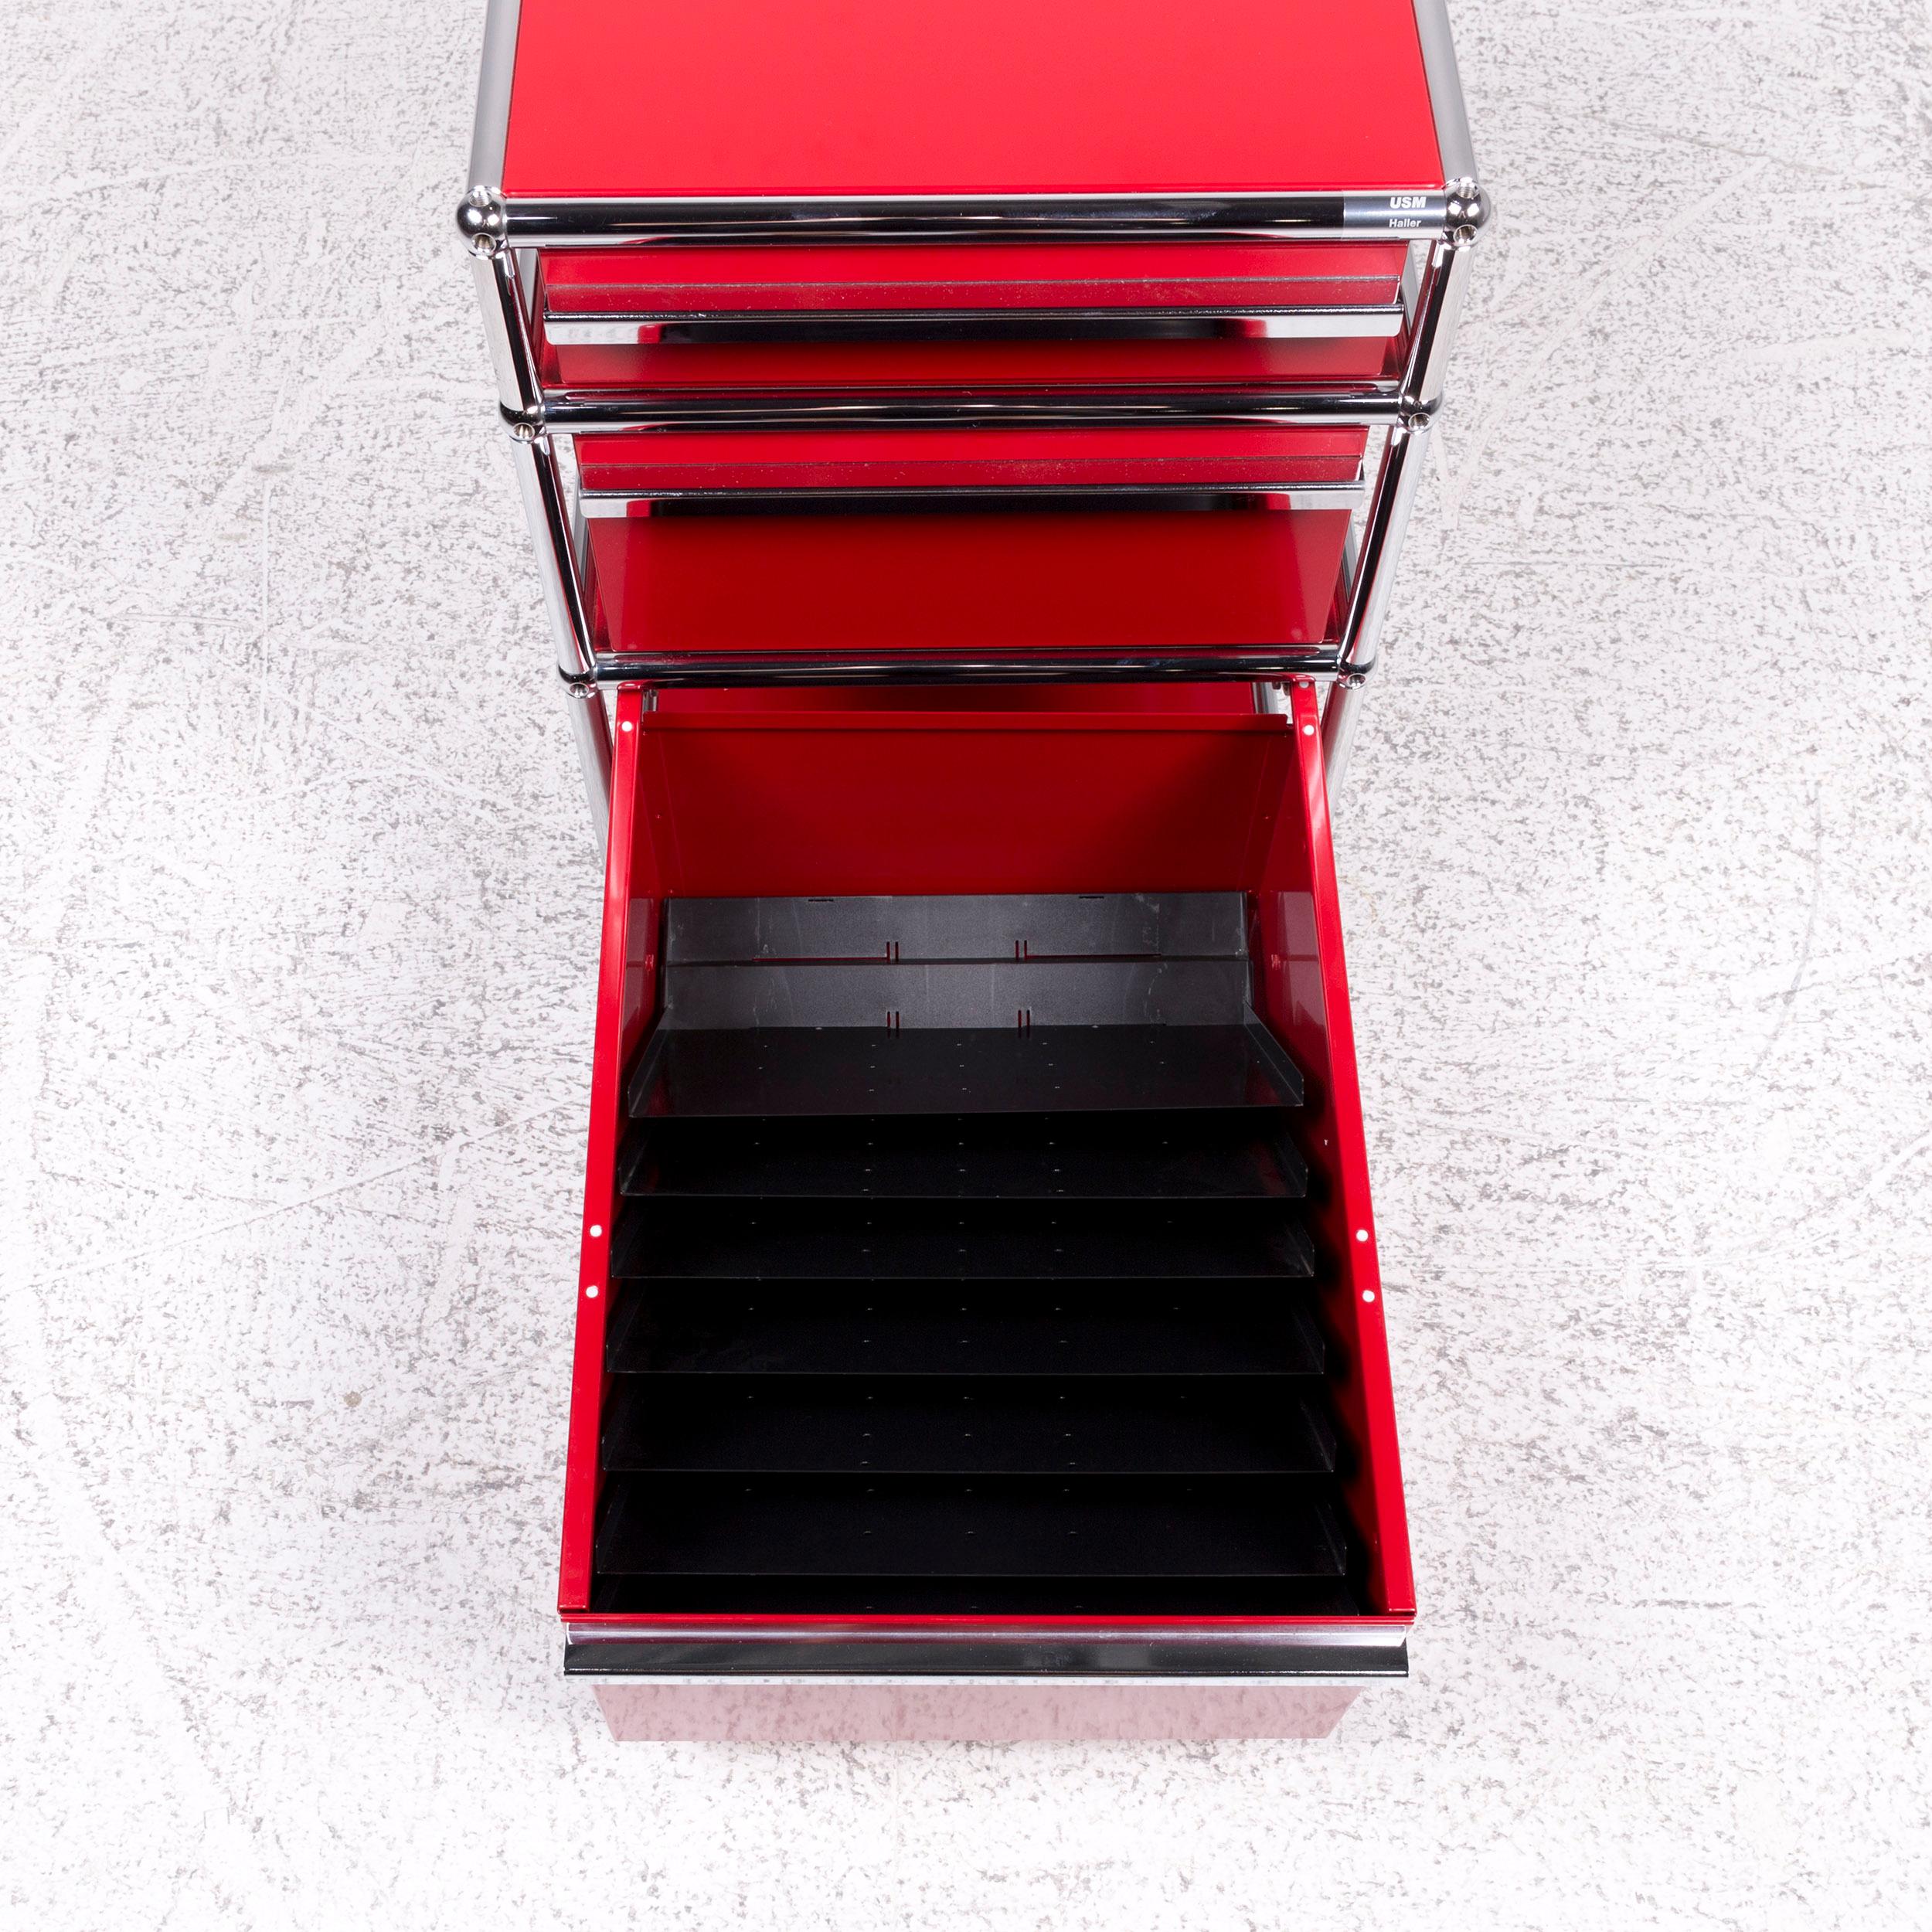 USM Haller Metal Shelf Sideboard Rollcontainer Set 3 Drawers Red 4